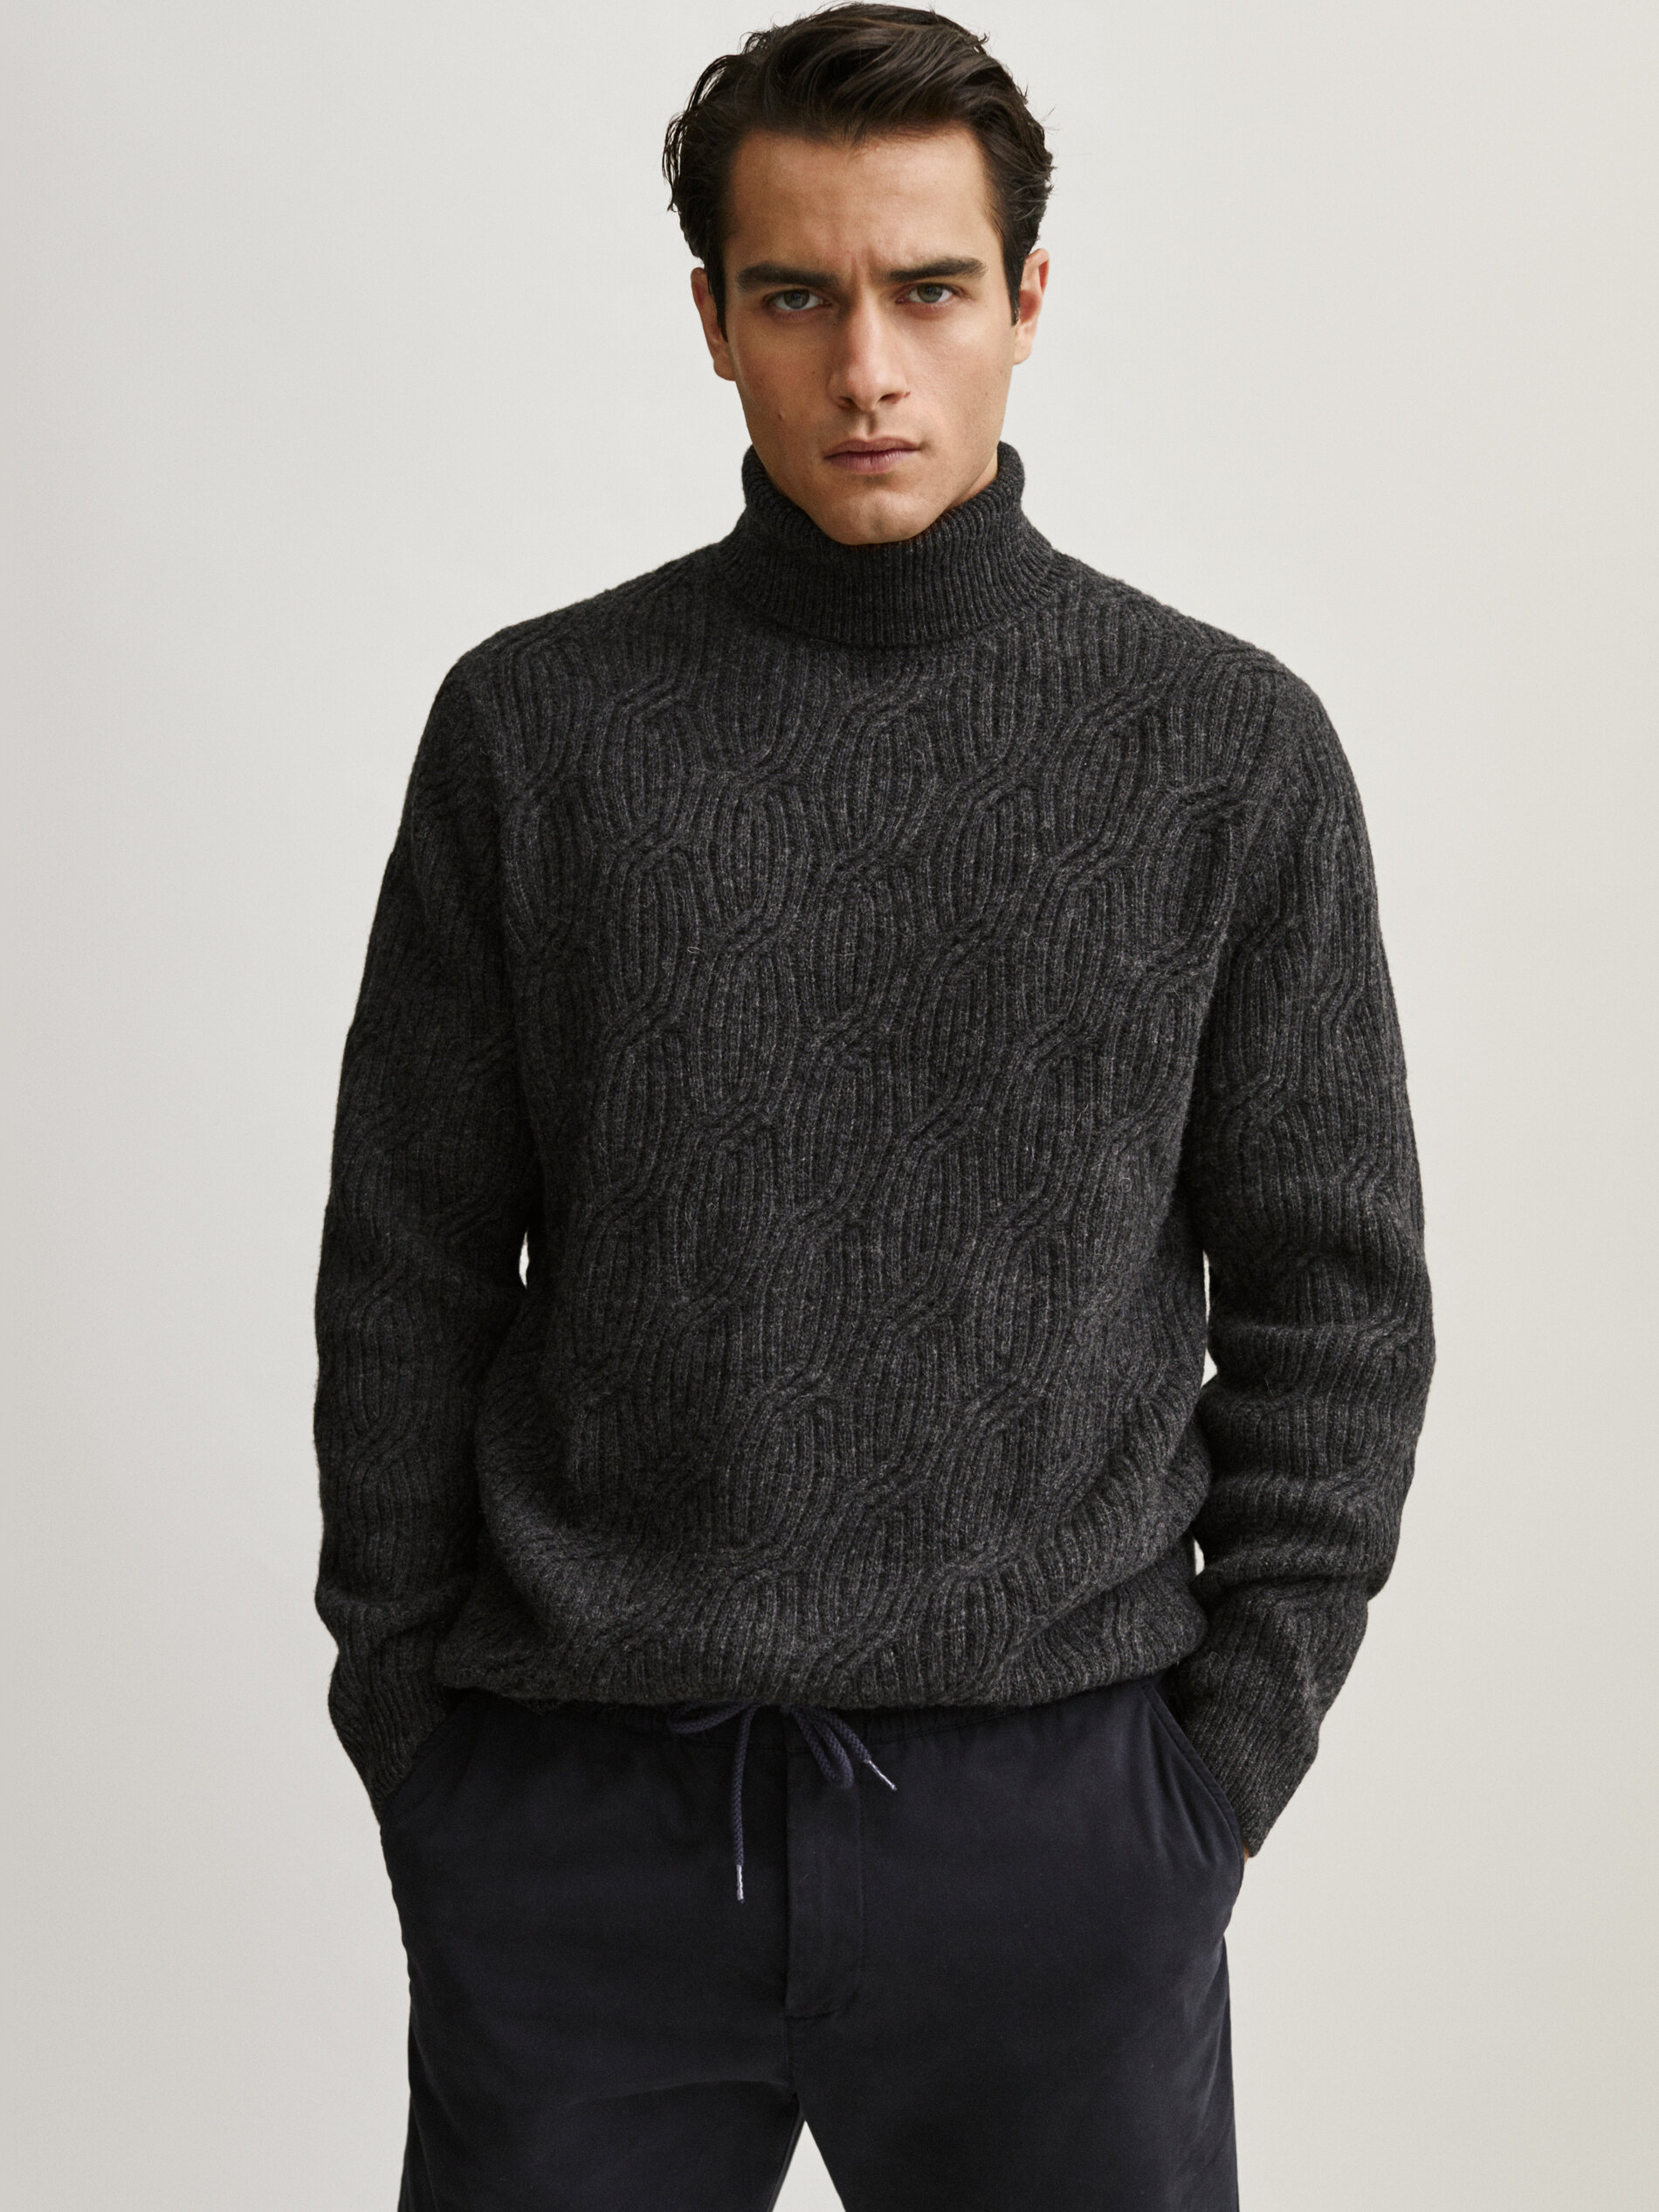 Massimo Dutti - Wool high neck sweater